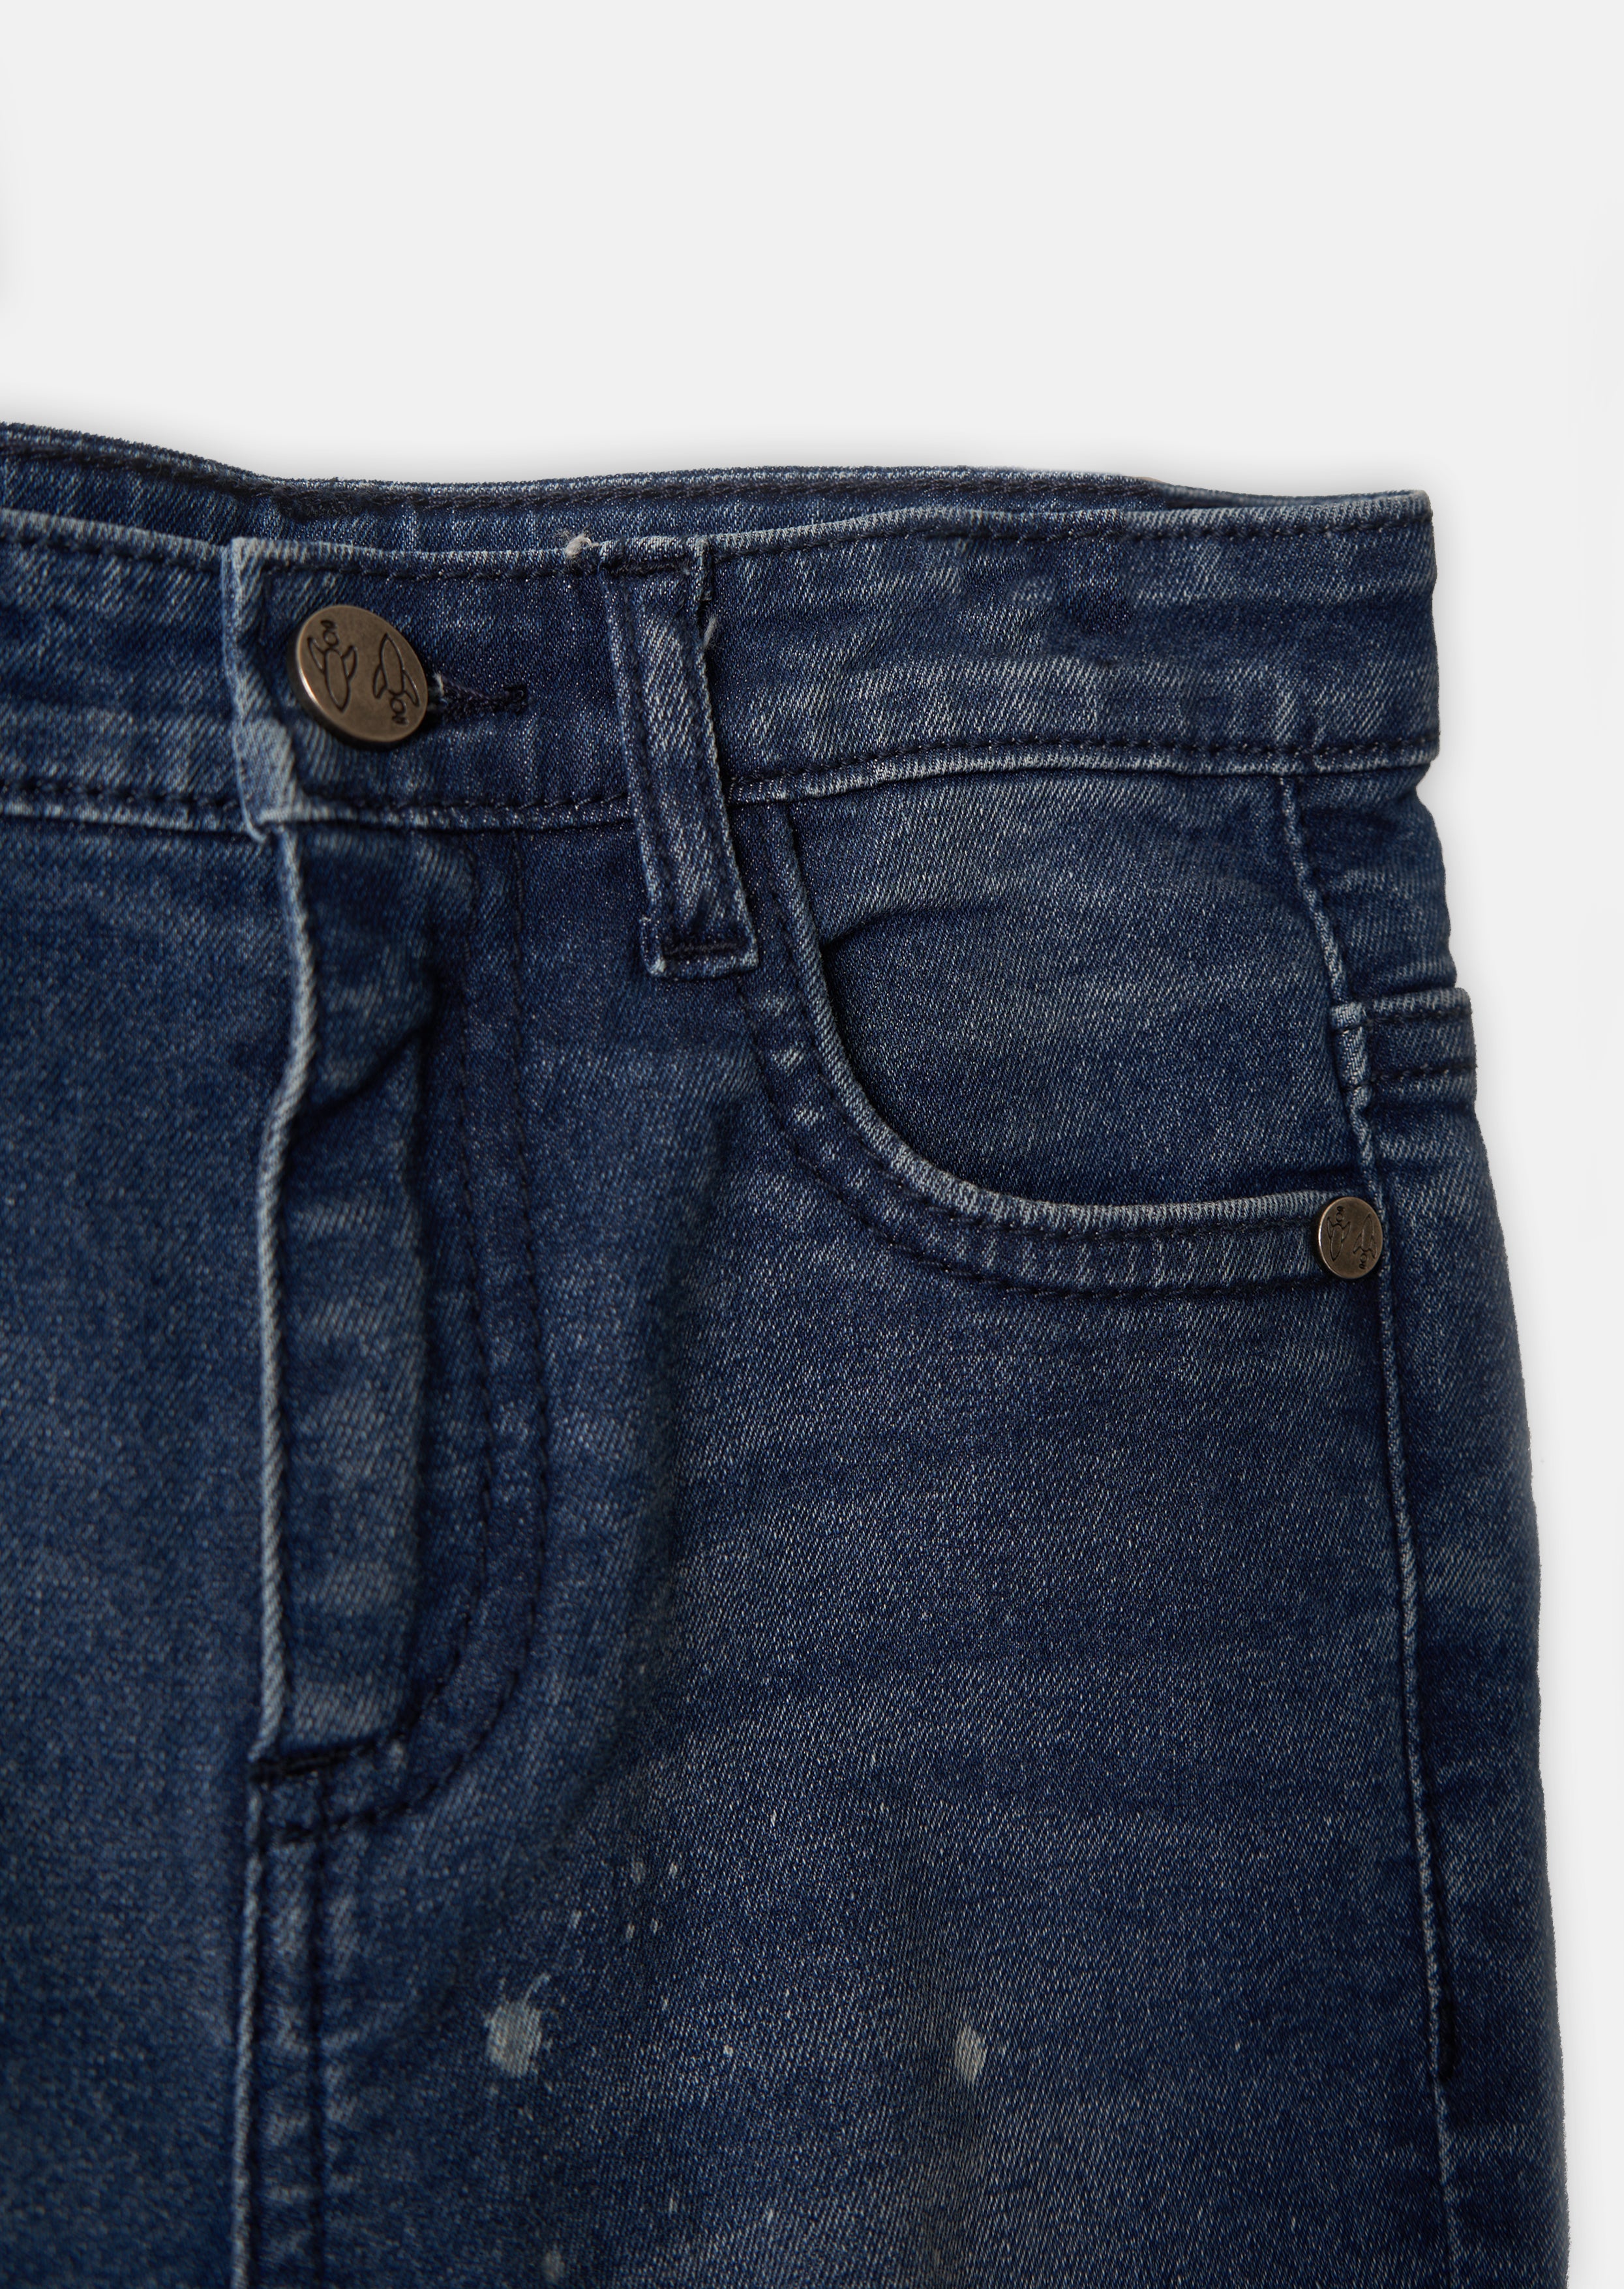 Buy Branded Jeans for Men | Trendy Denim Jeans for Men